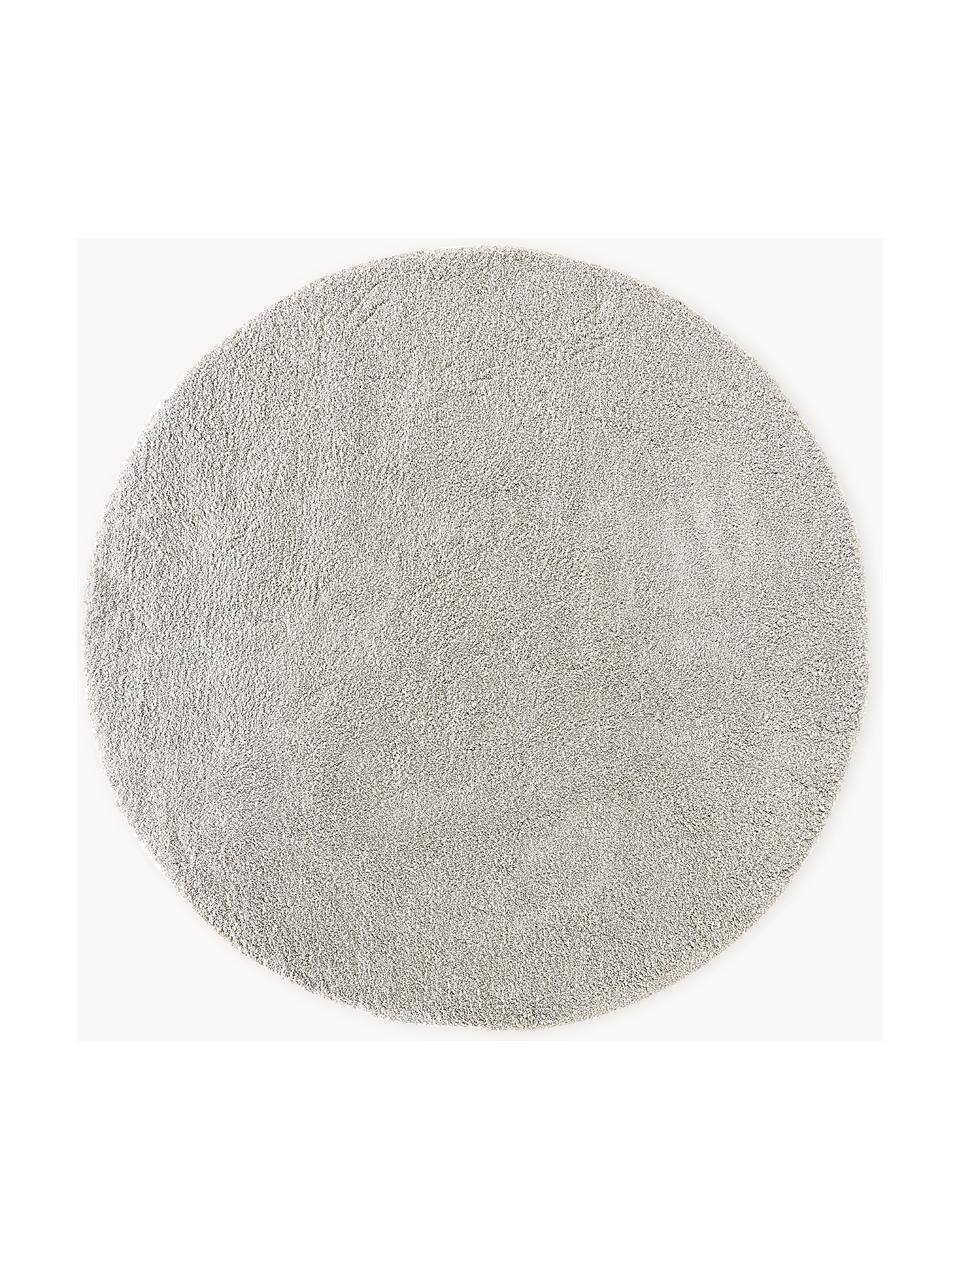 Tapis rond épais et moelleux Leighton, Gris clair - beige, Ø 120 cm (taille S)